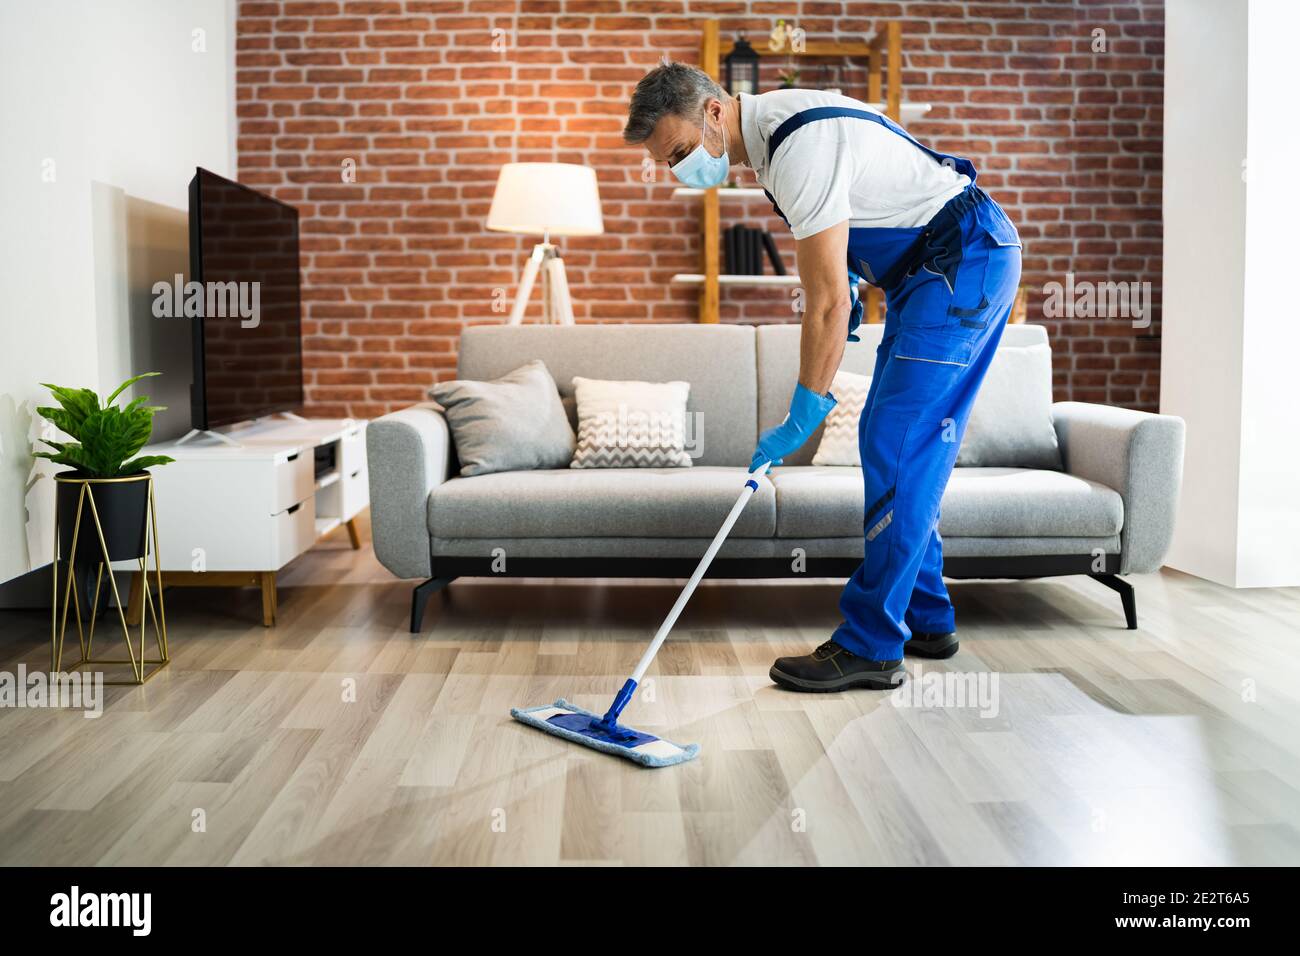 Fotos de Negro hombre piso de limpieza con aspiradora y fregona - Imagen de  © Milkos #223508208